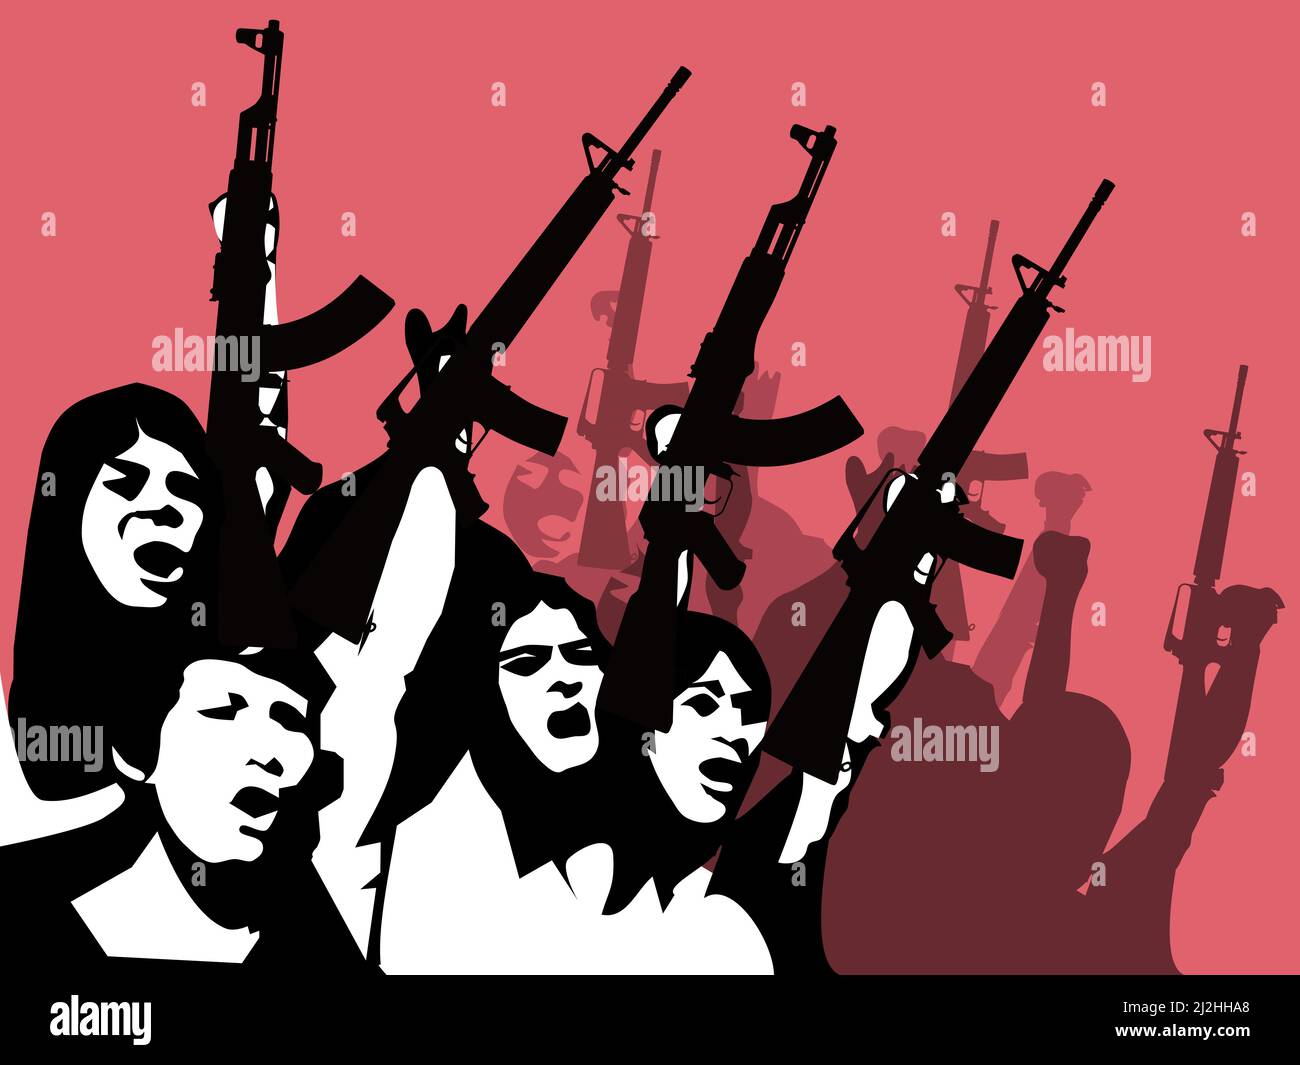 Une silhouette noire d'un groupe de personnes tenant un fusil avec un fond rouge. Illustration de Vecteur